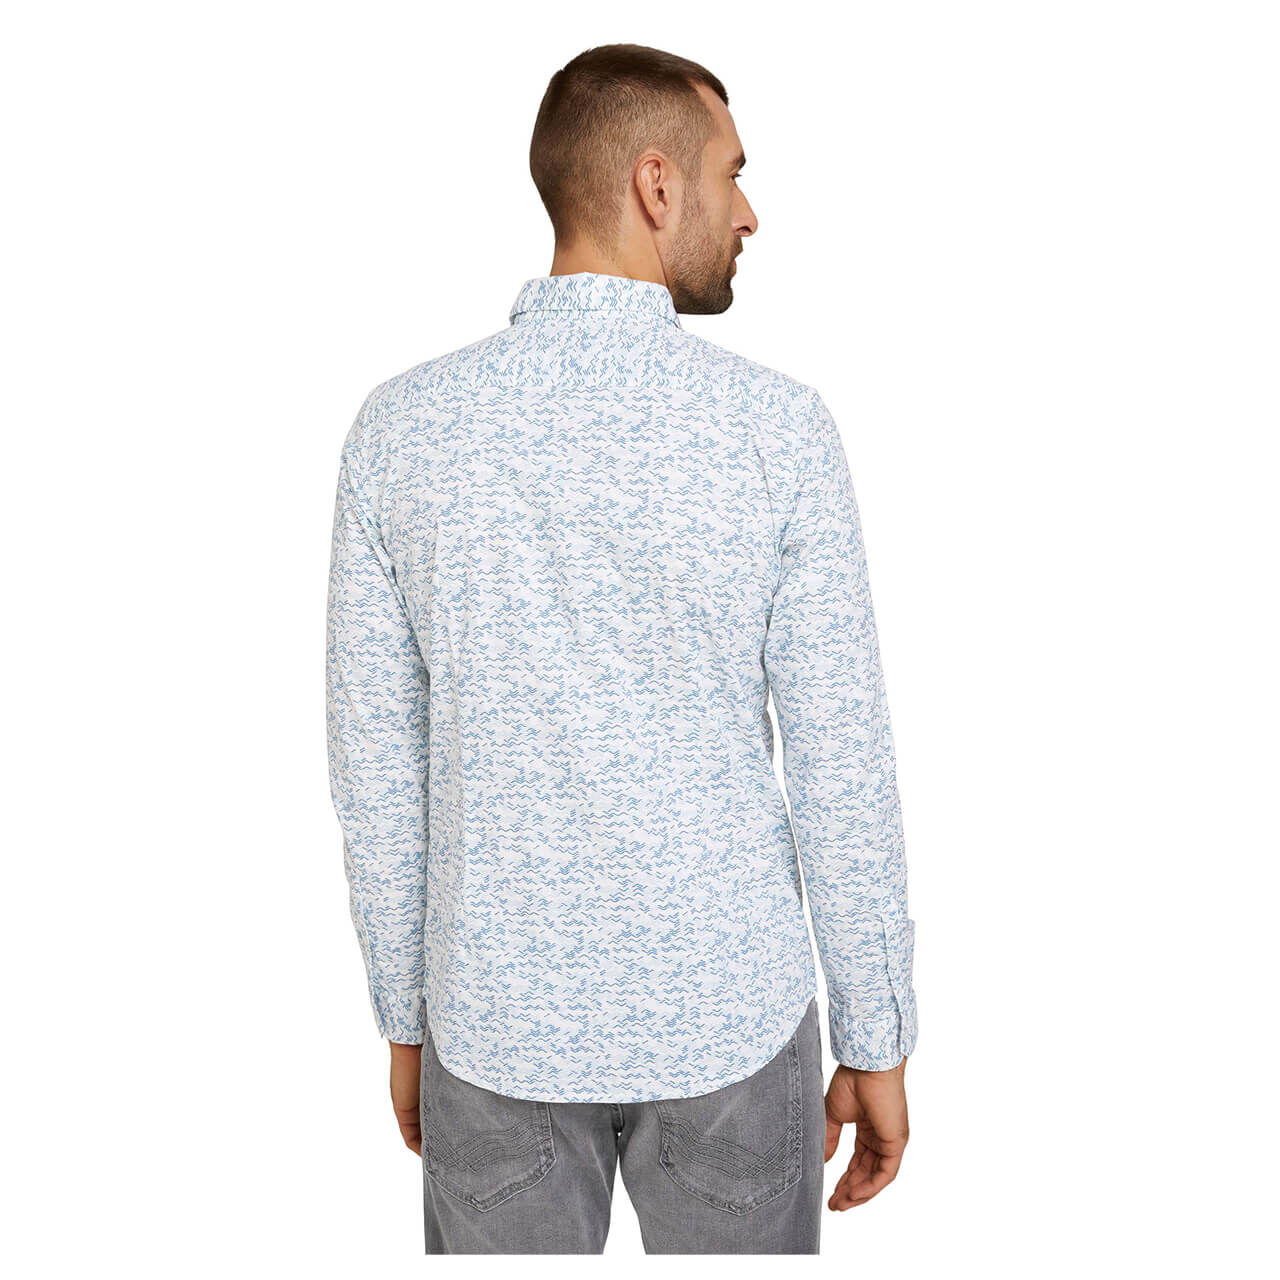 Tom Tailor Hemd für Herren in Weiß mit Print, FarbNr.: 29030